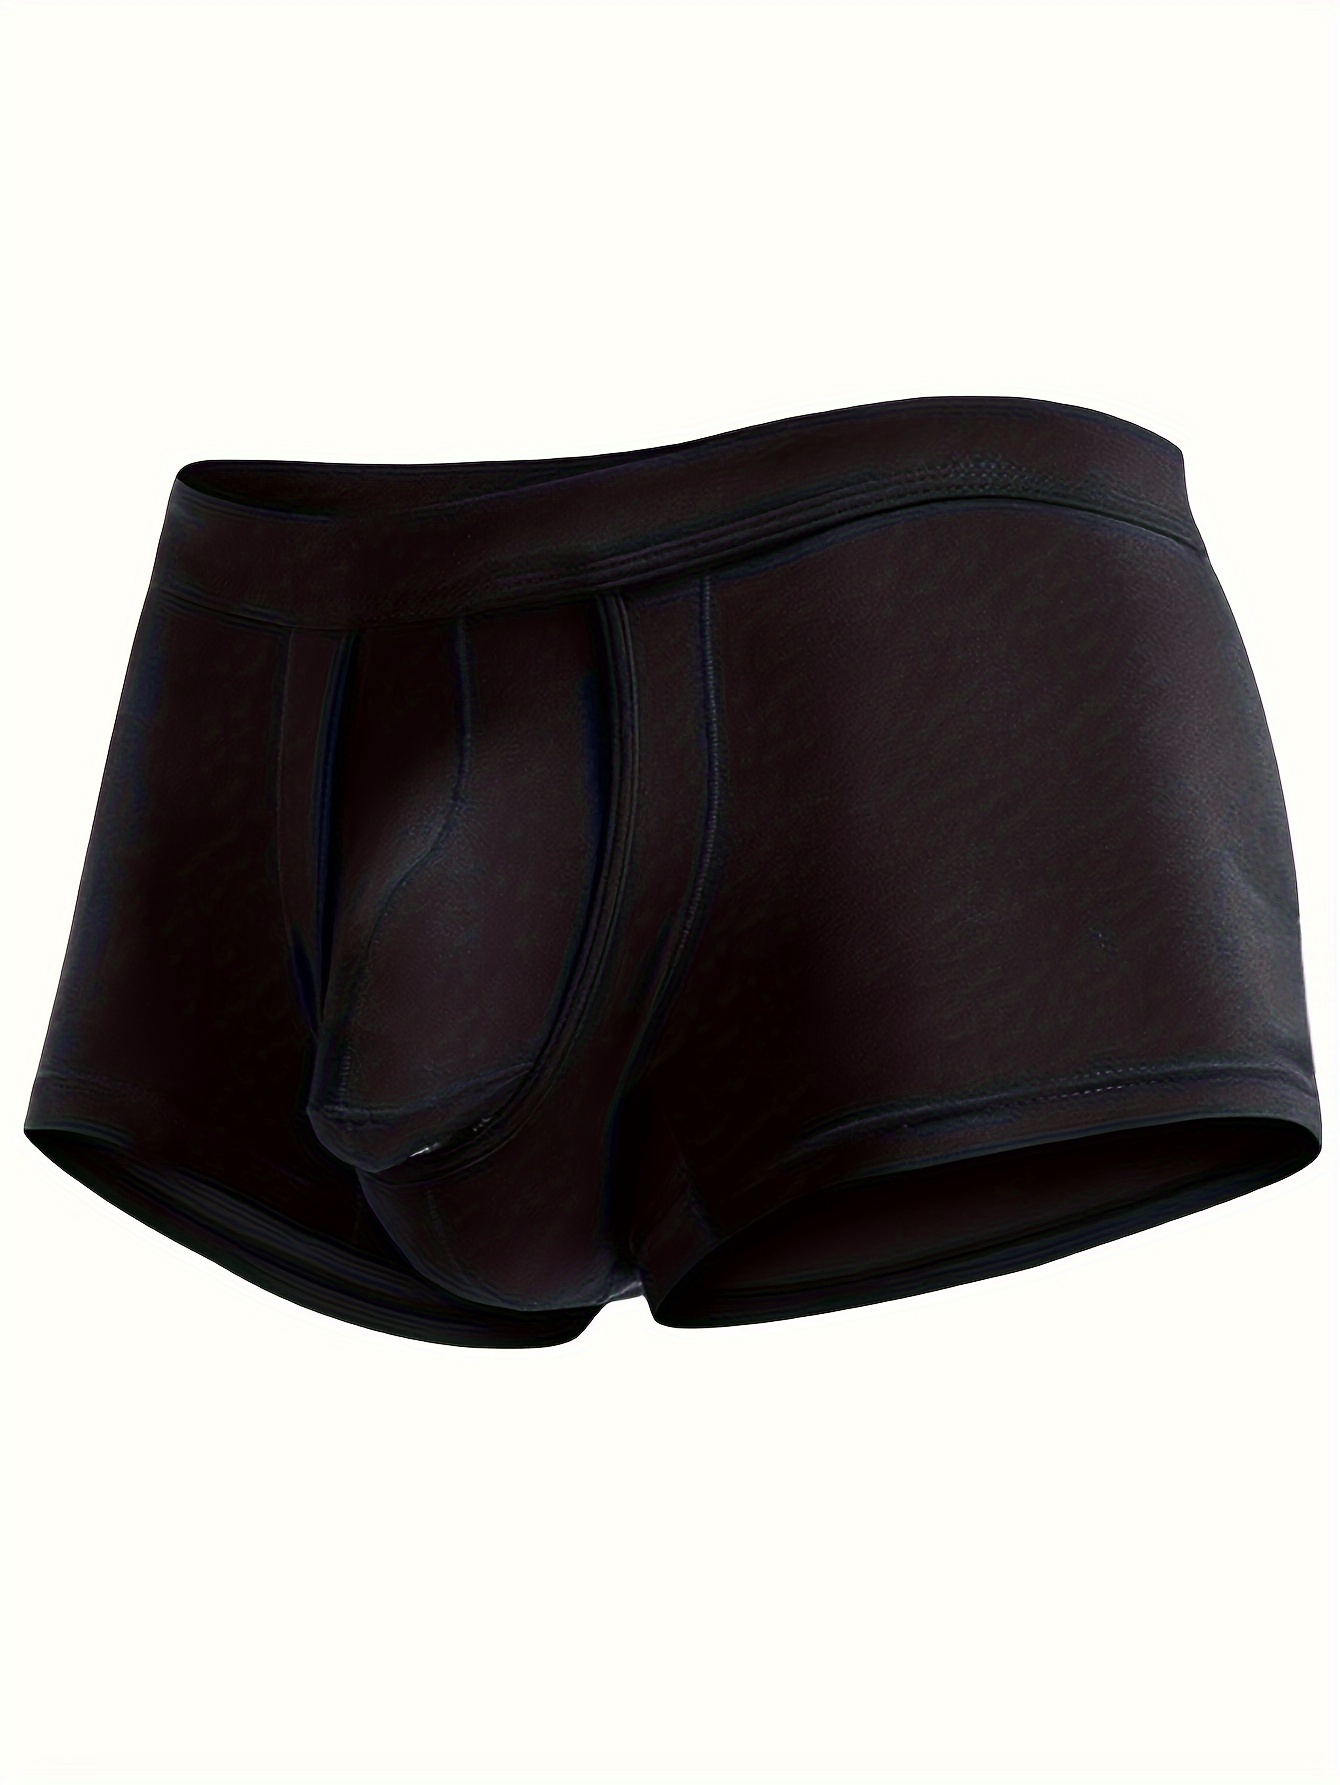 Men's Boxer Briefs Underwear Passion T-back perspective Gauze Hole Underpant